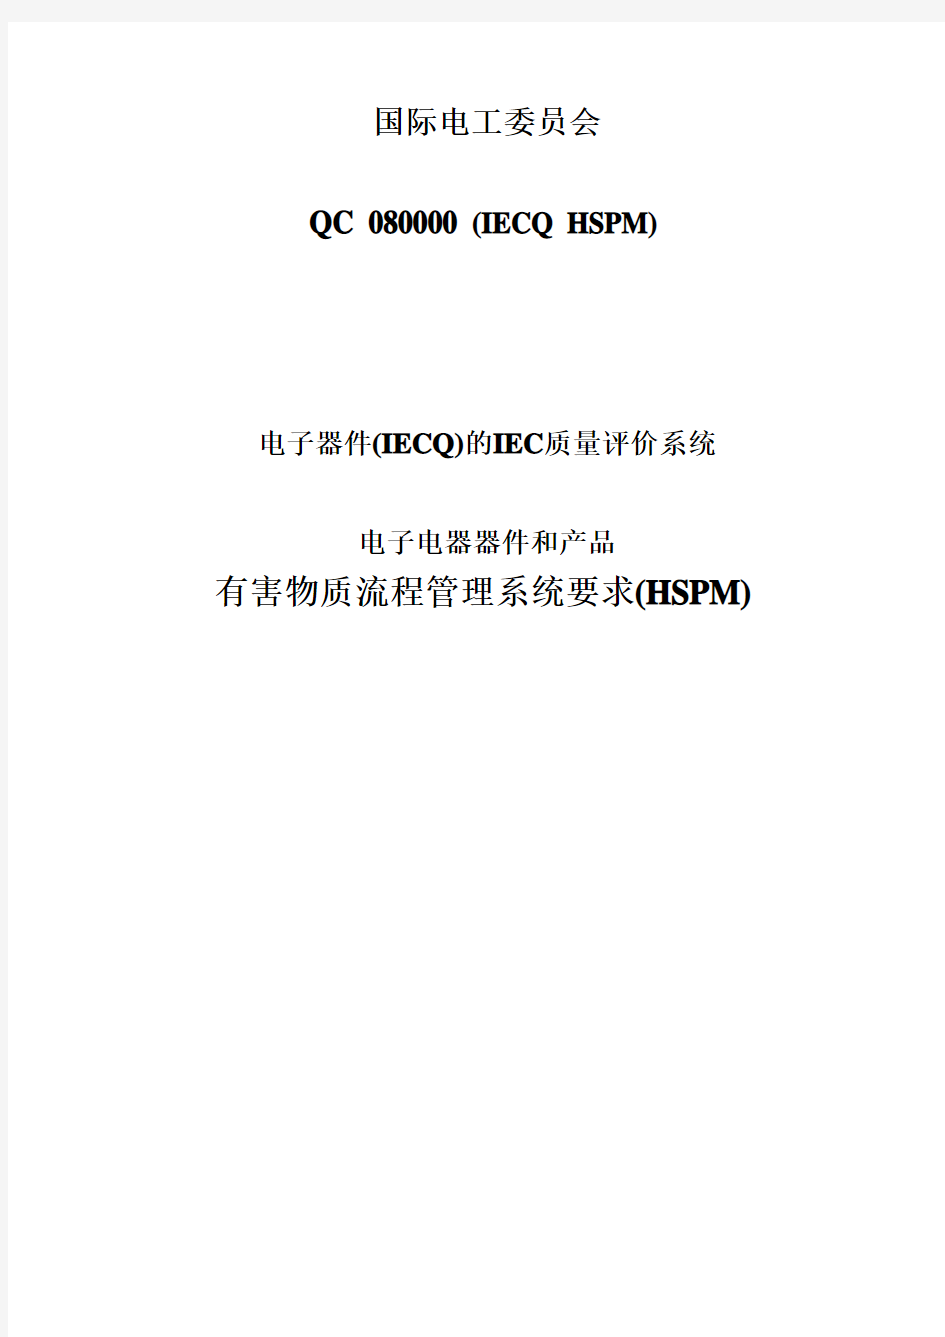 QC080000标准 中文